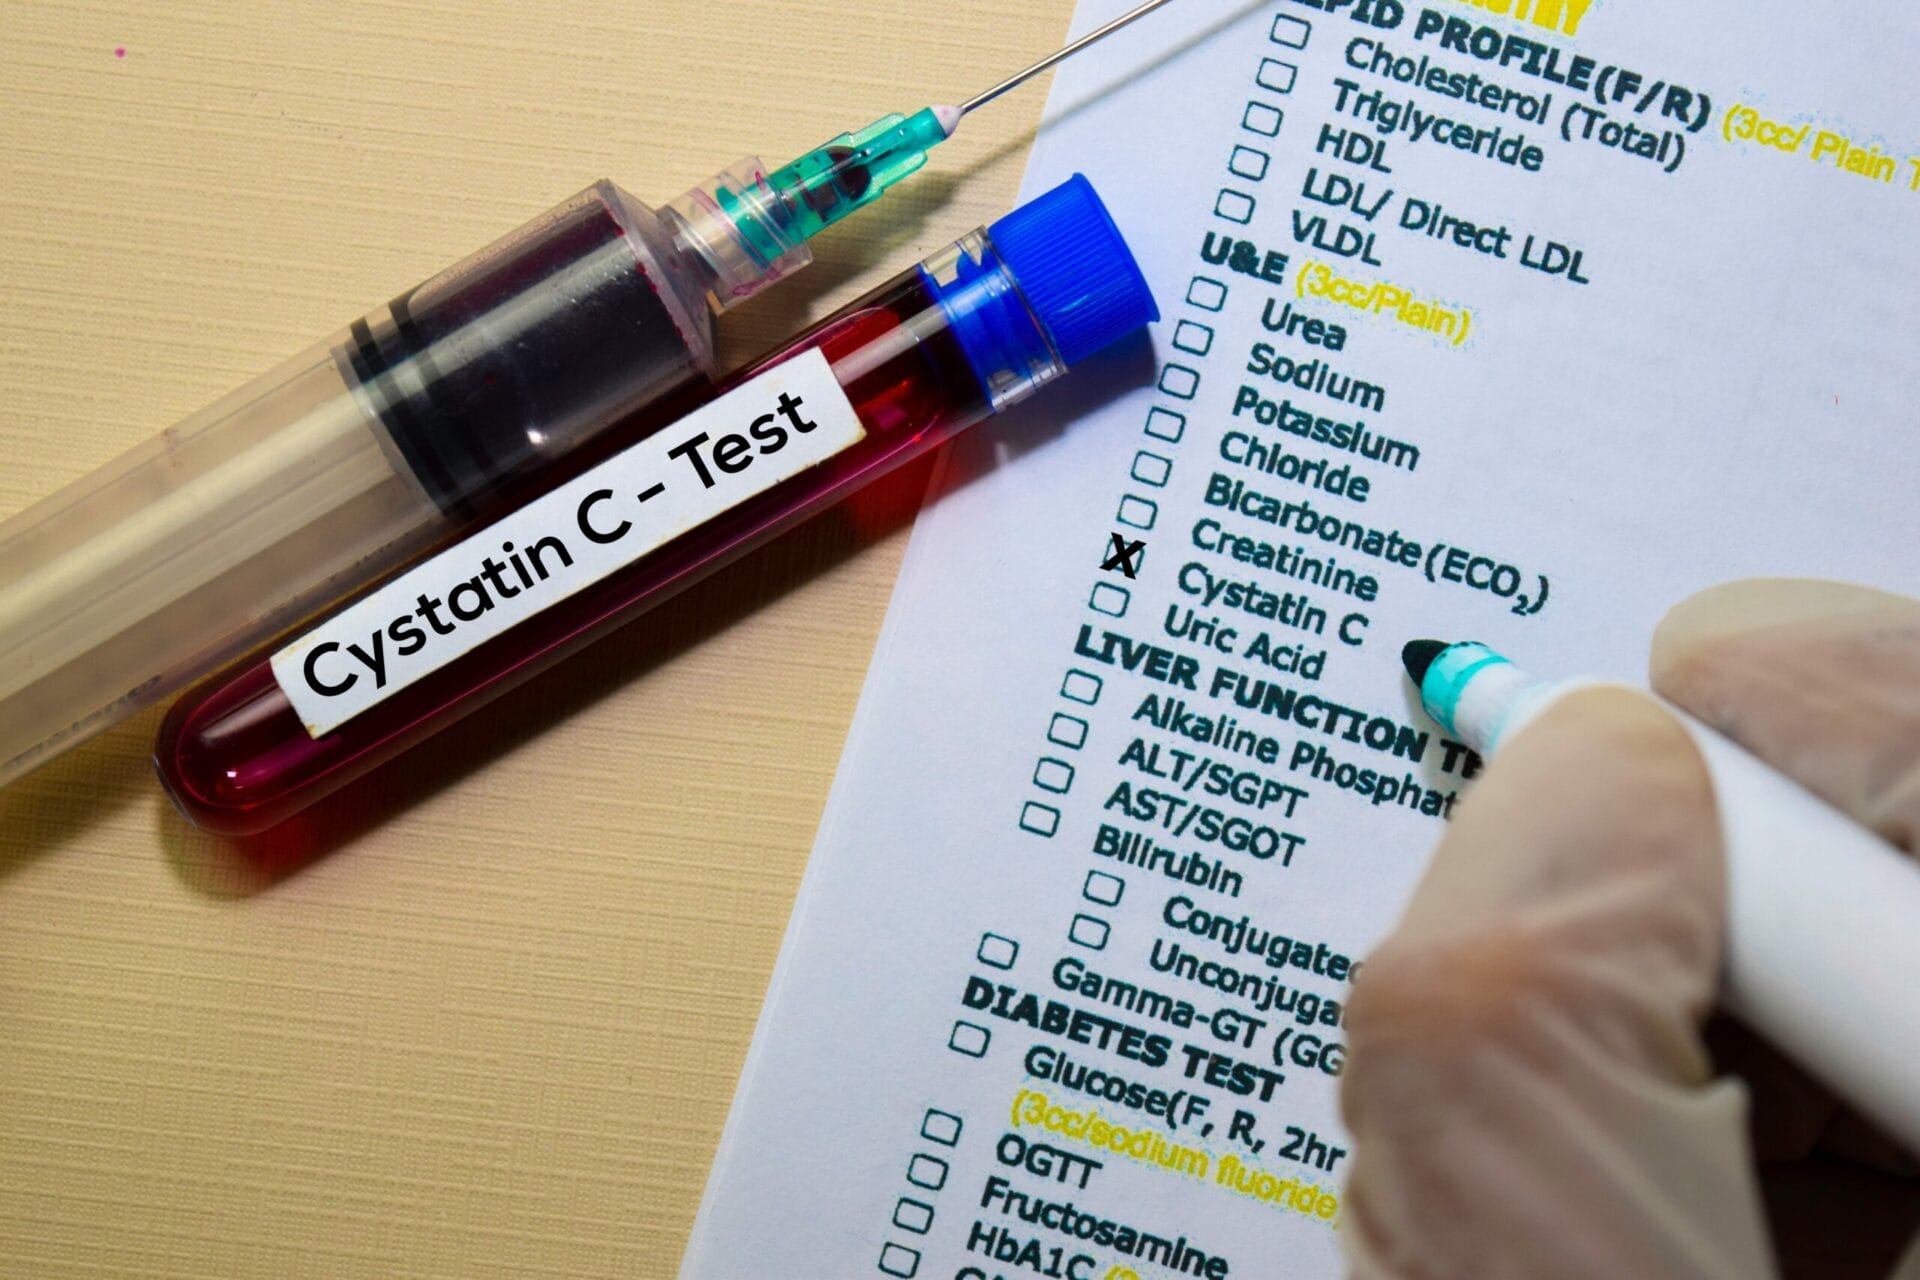 Cystatin C Test In Delhi